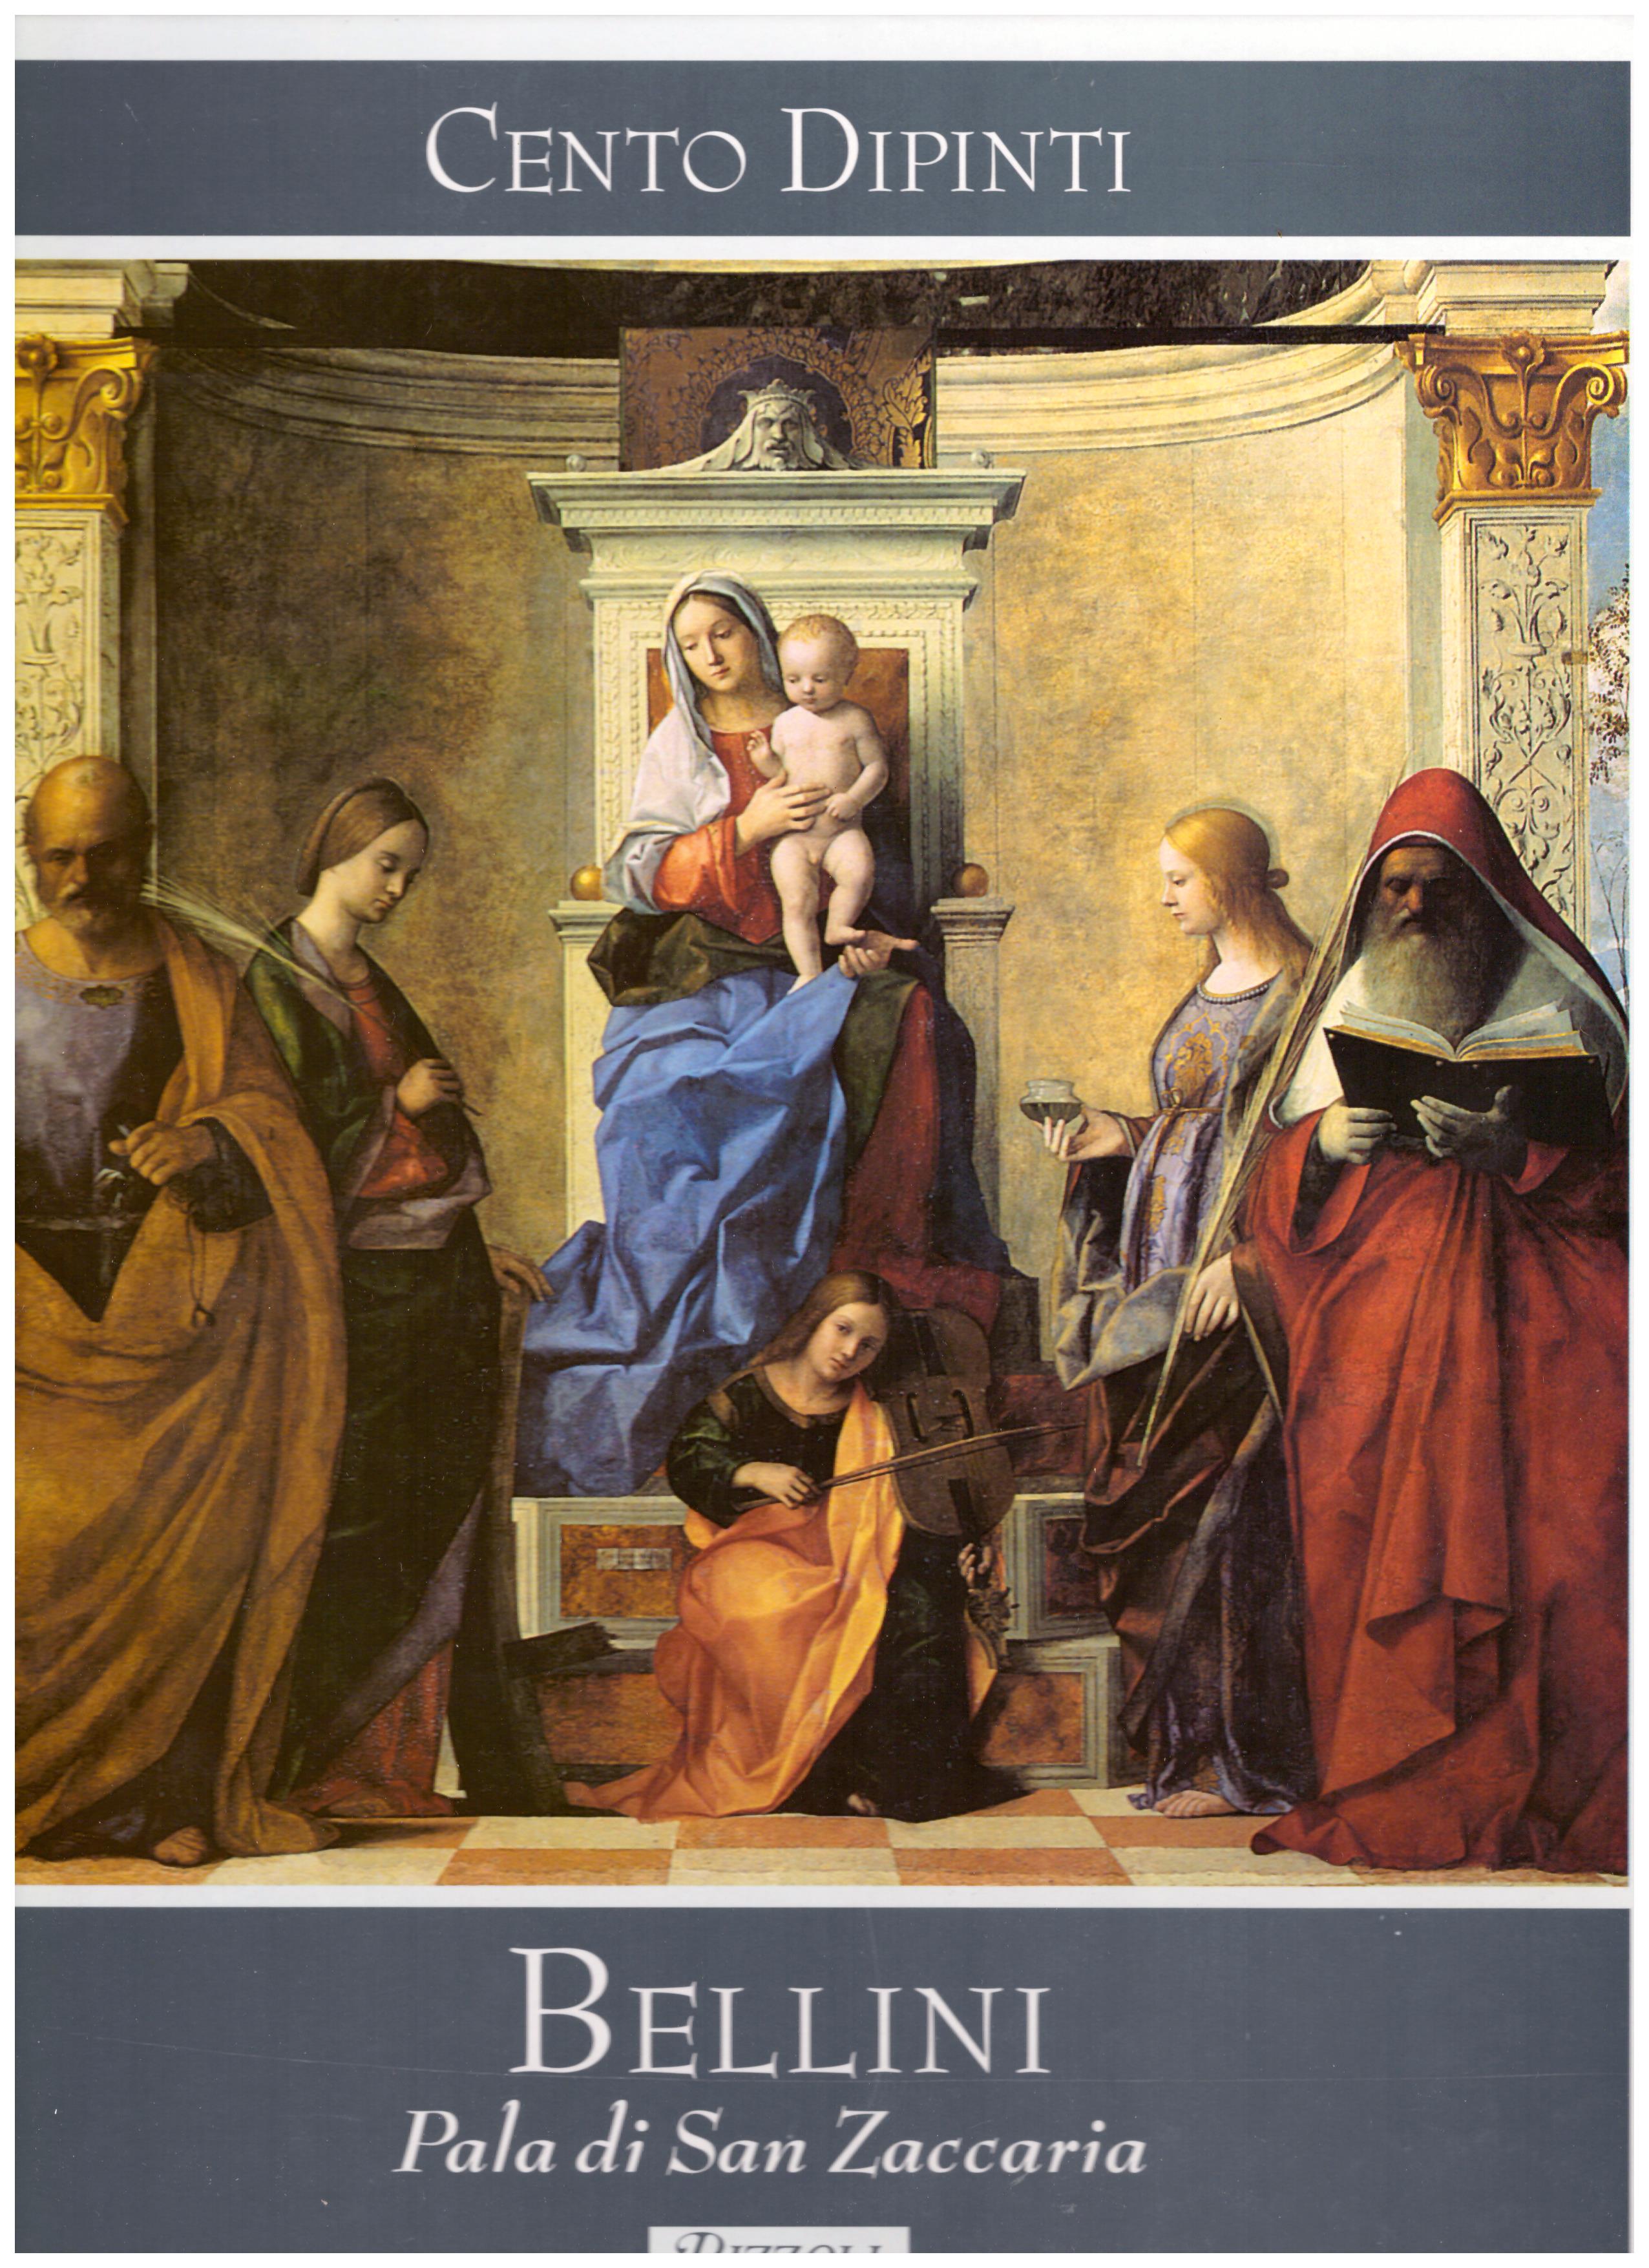 Titolo: Cento Dipinti, Bellini, Pala di San Zaccaria Autore : AA.VV.  Editore: Rizzoli